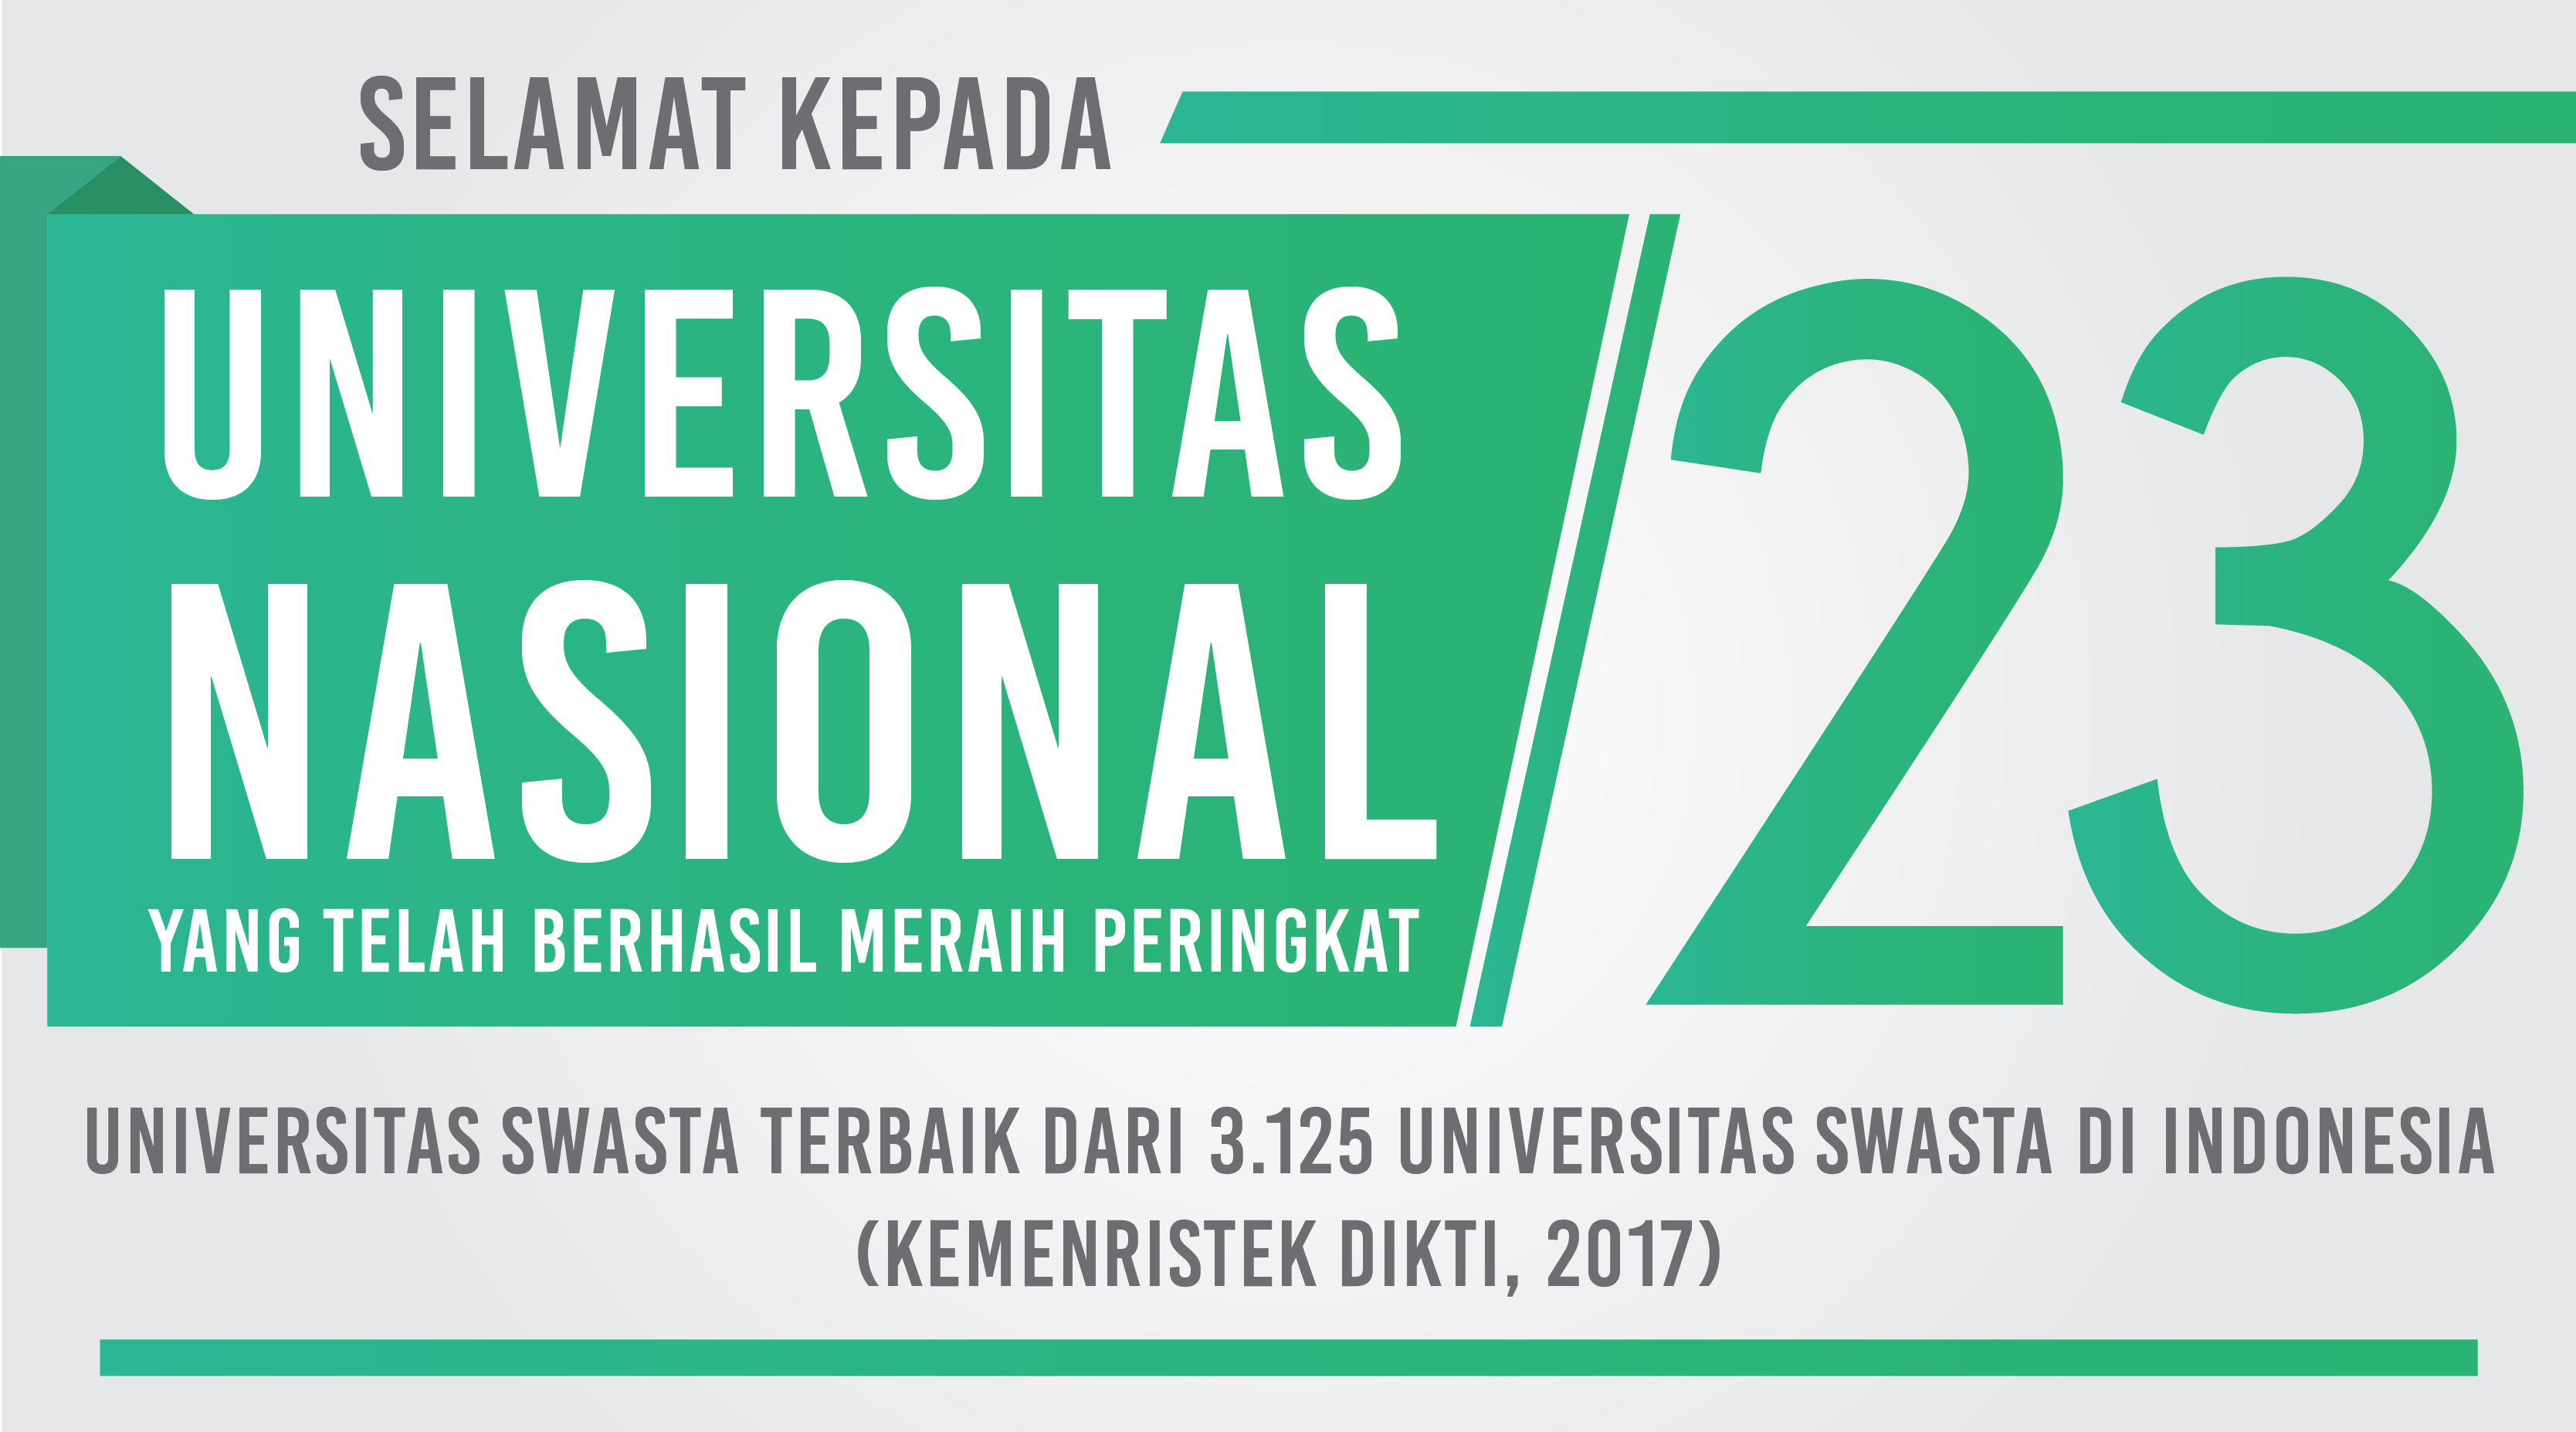 UNAS PERINGKAT 23 UNIVERSITAS SWASTA TERBAIK DI INDONESIA